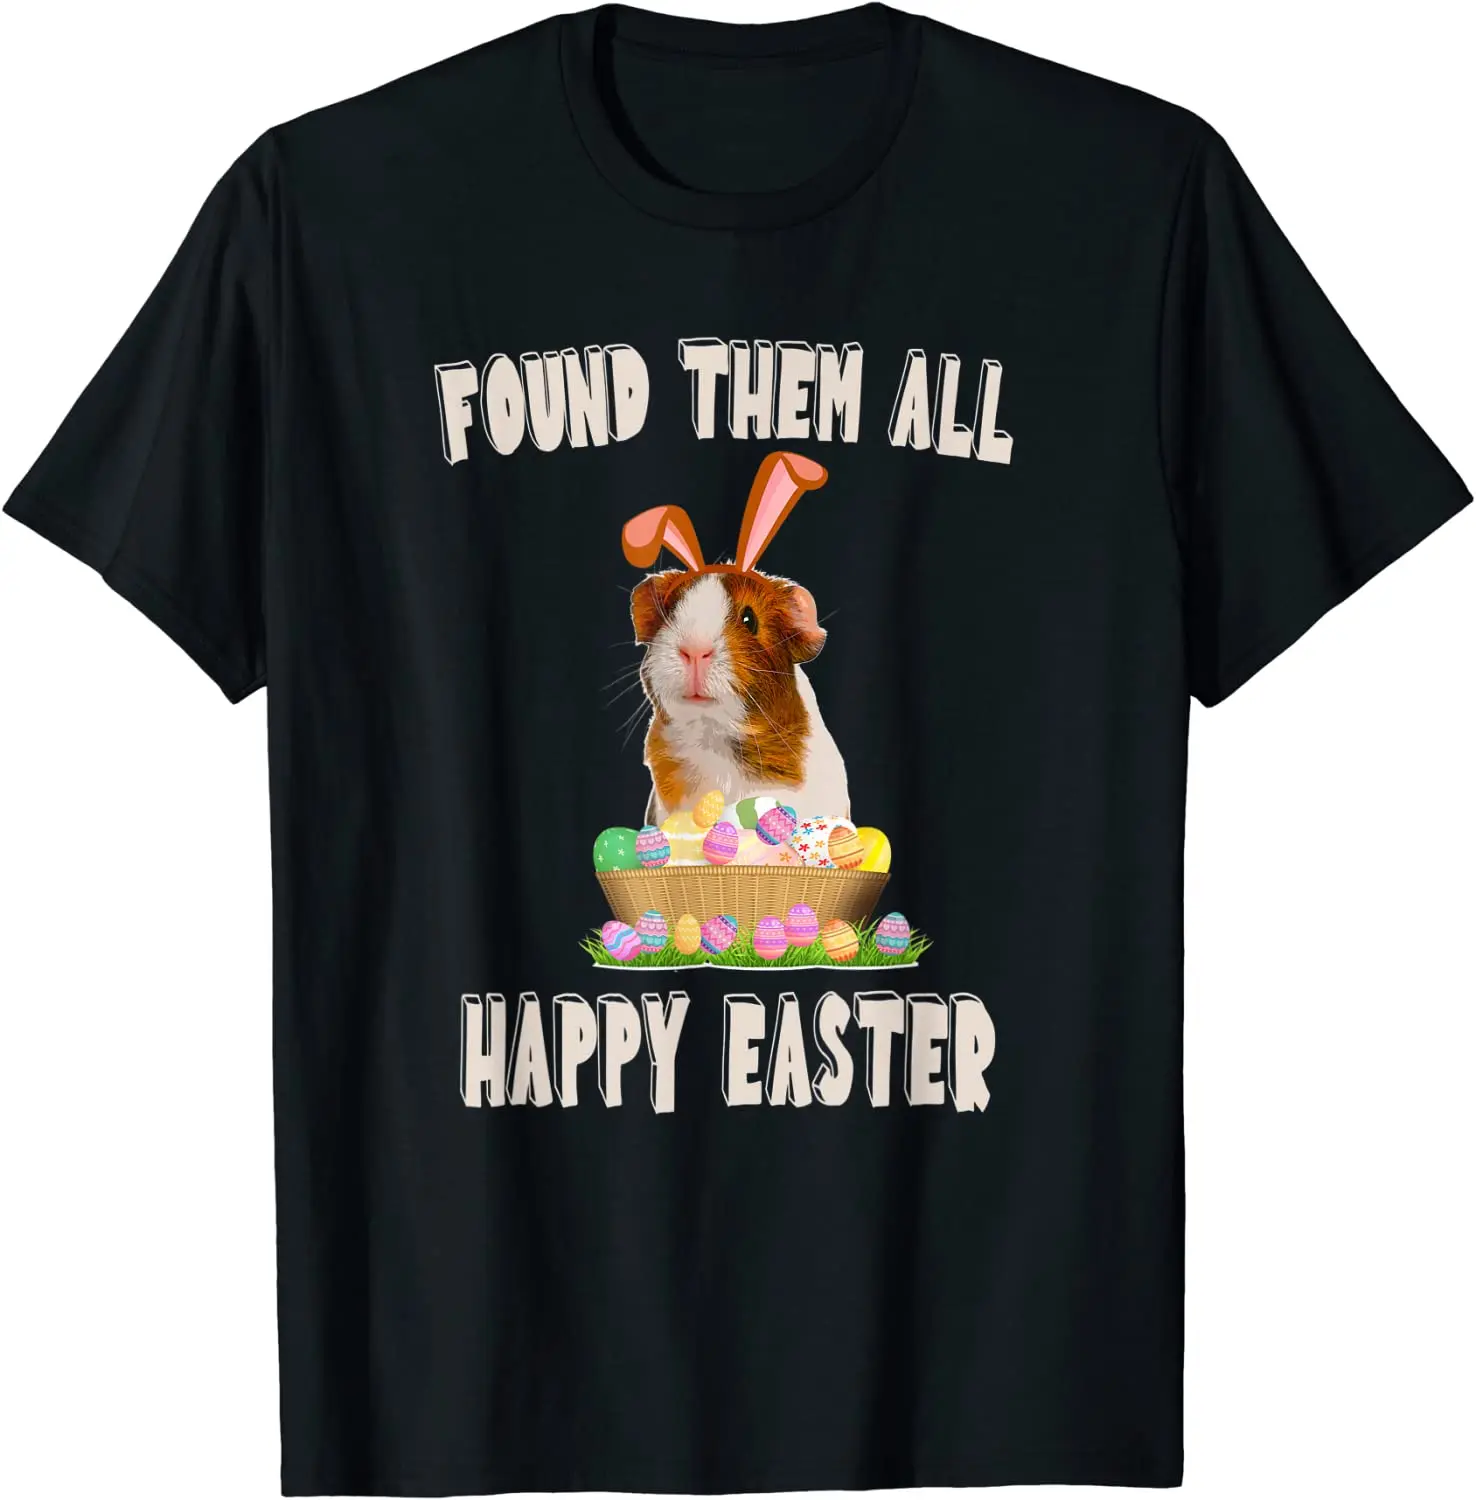 

Футболка-корзина с забавными ушками кролика из морской свиньи и пасхальными яйцами